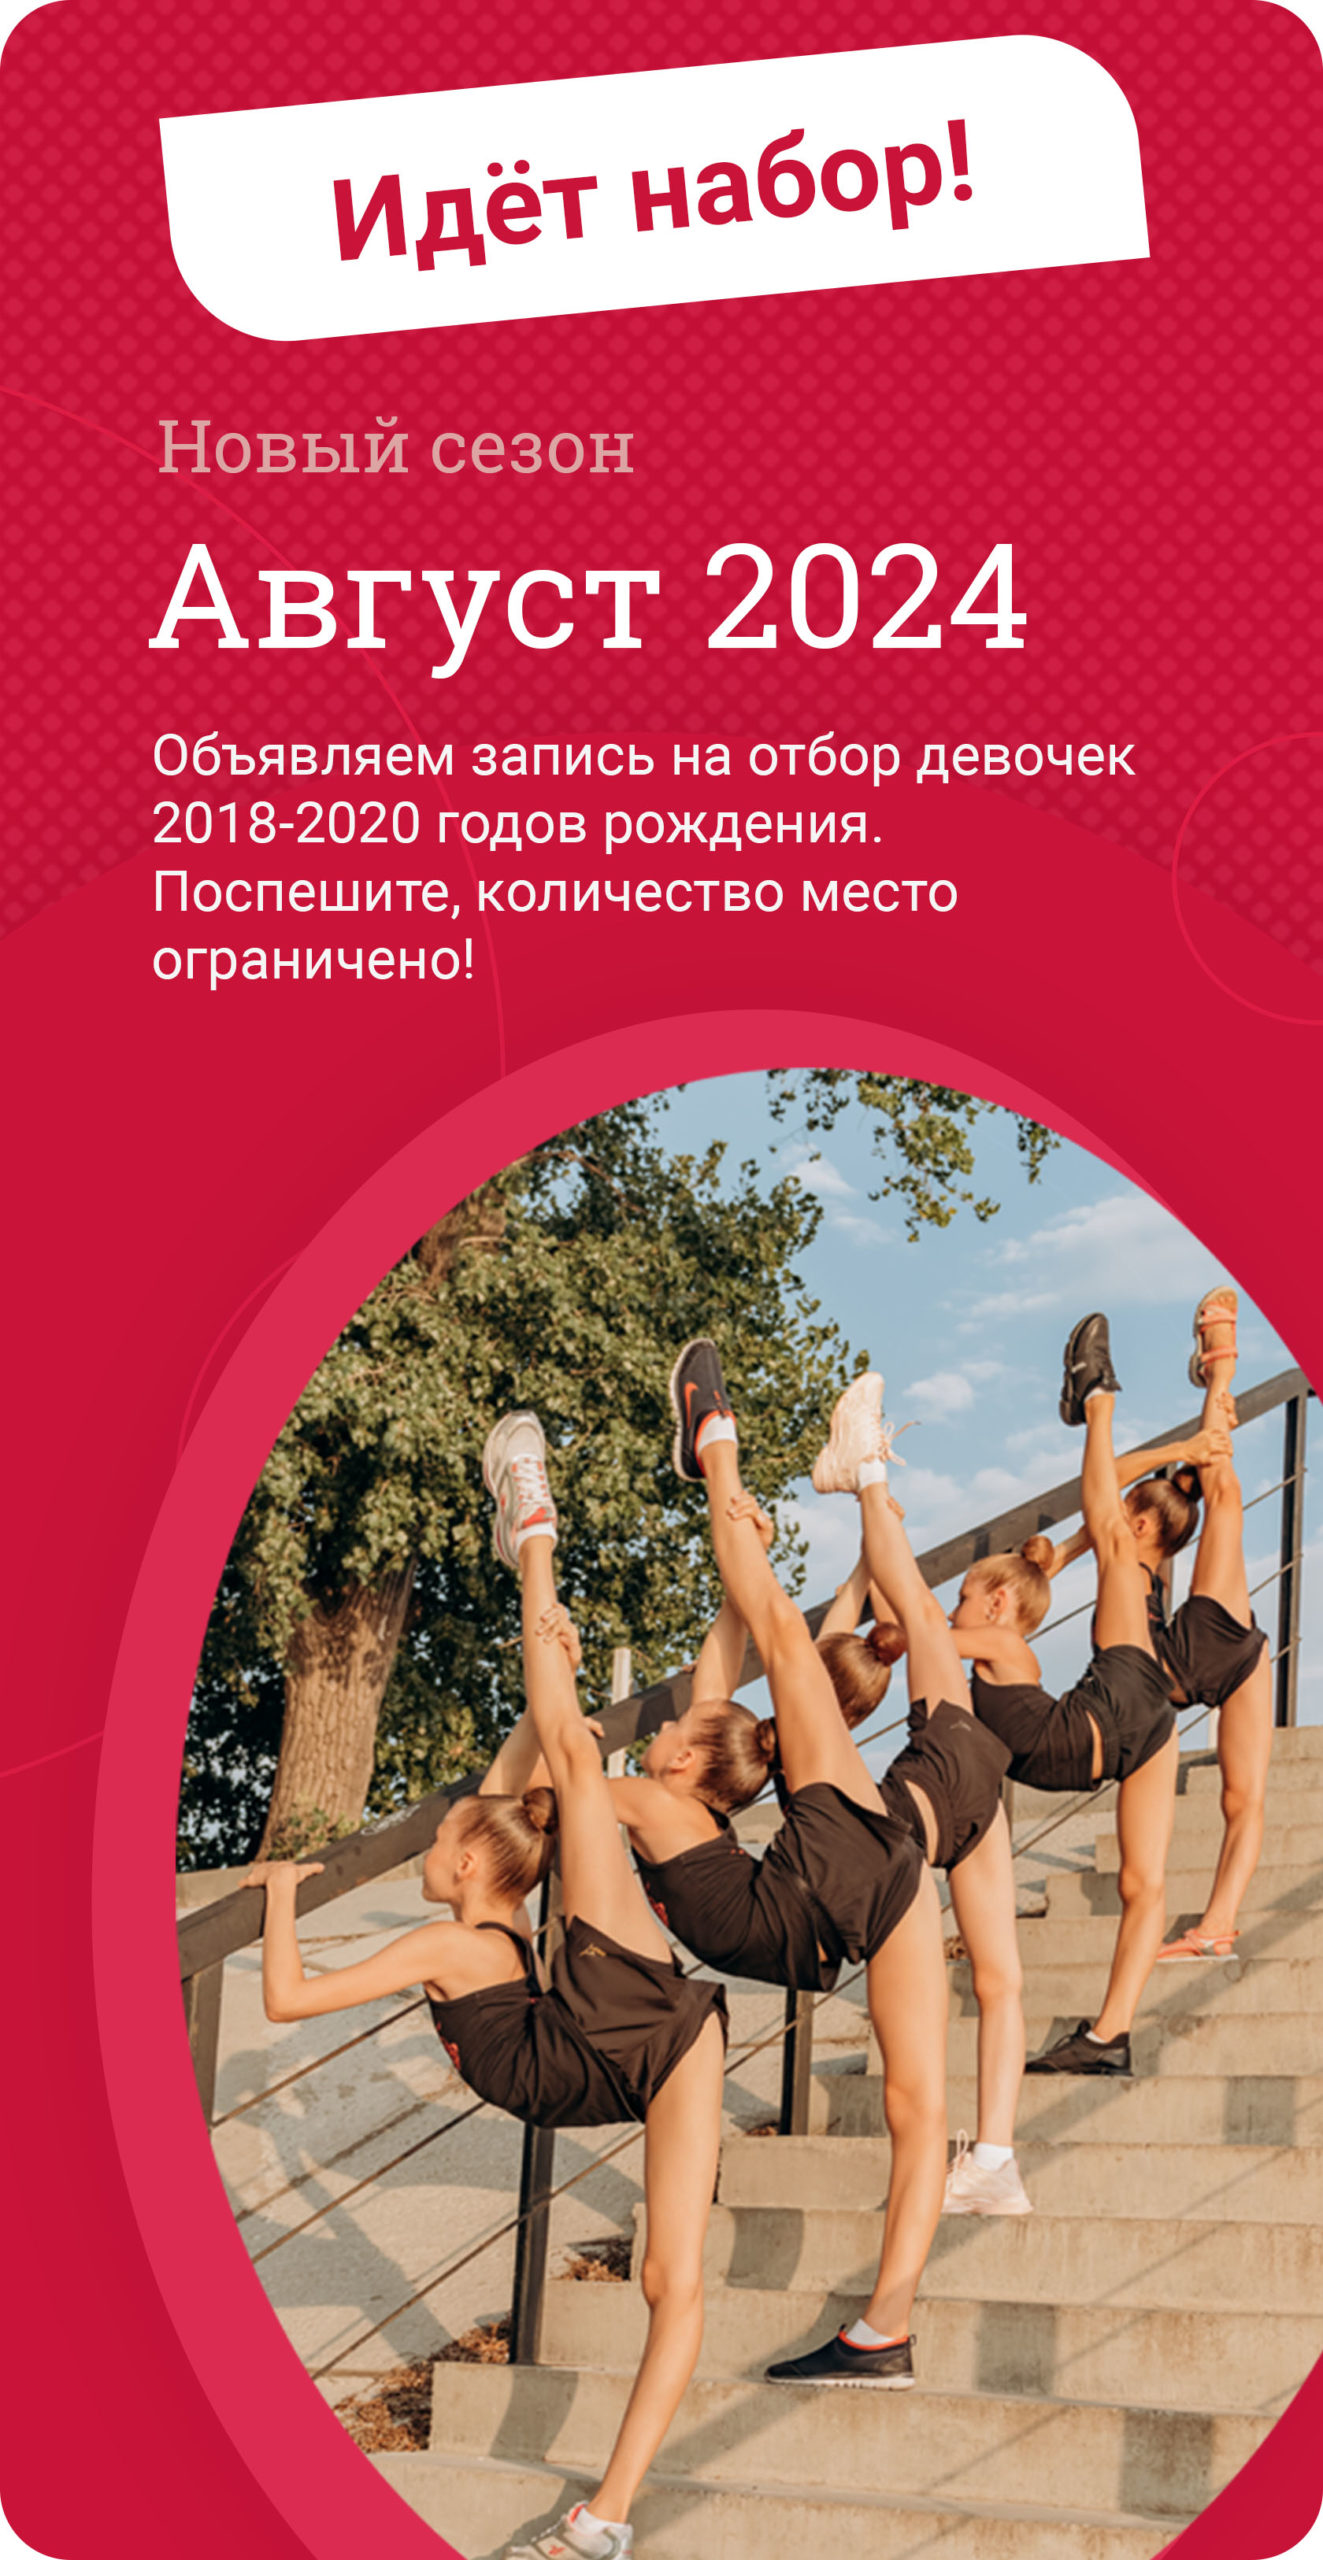 Клуб художественной гимнастики «Никаюниор» в Воронеже для детей